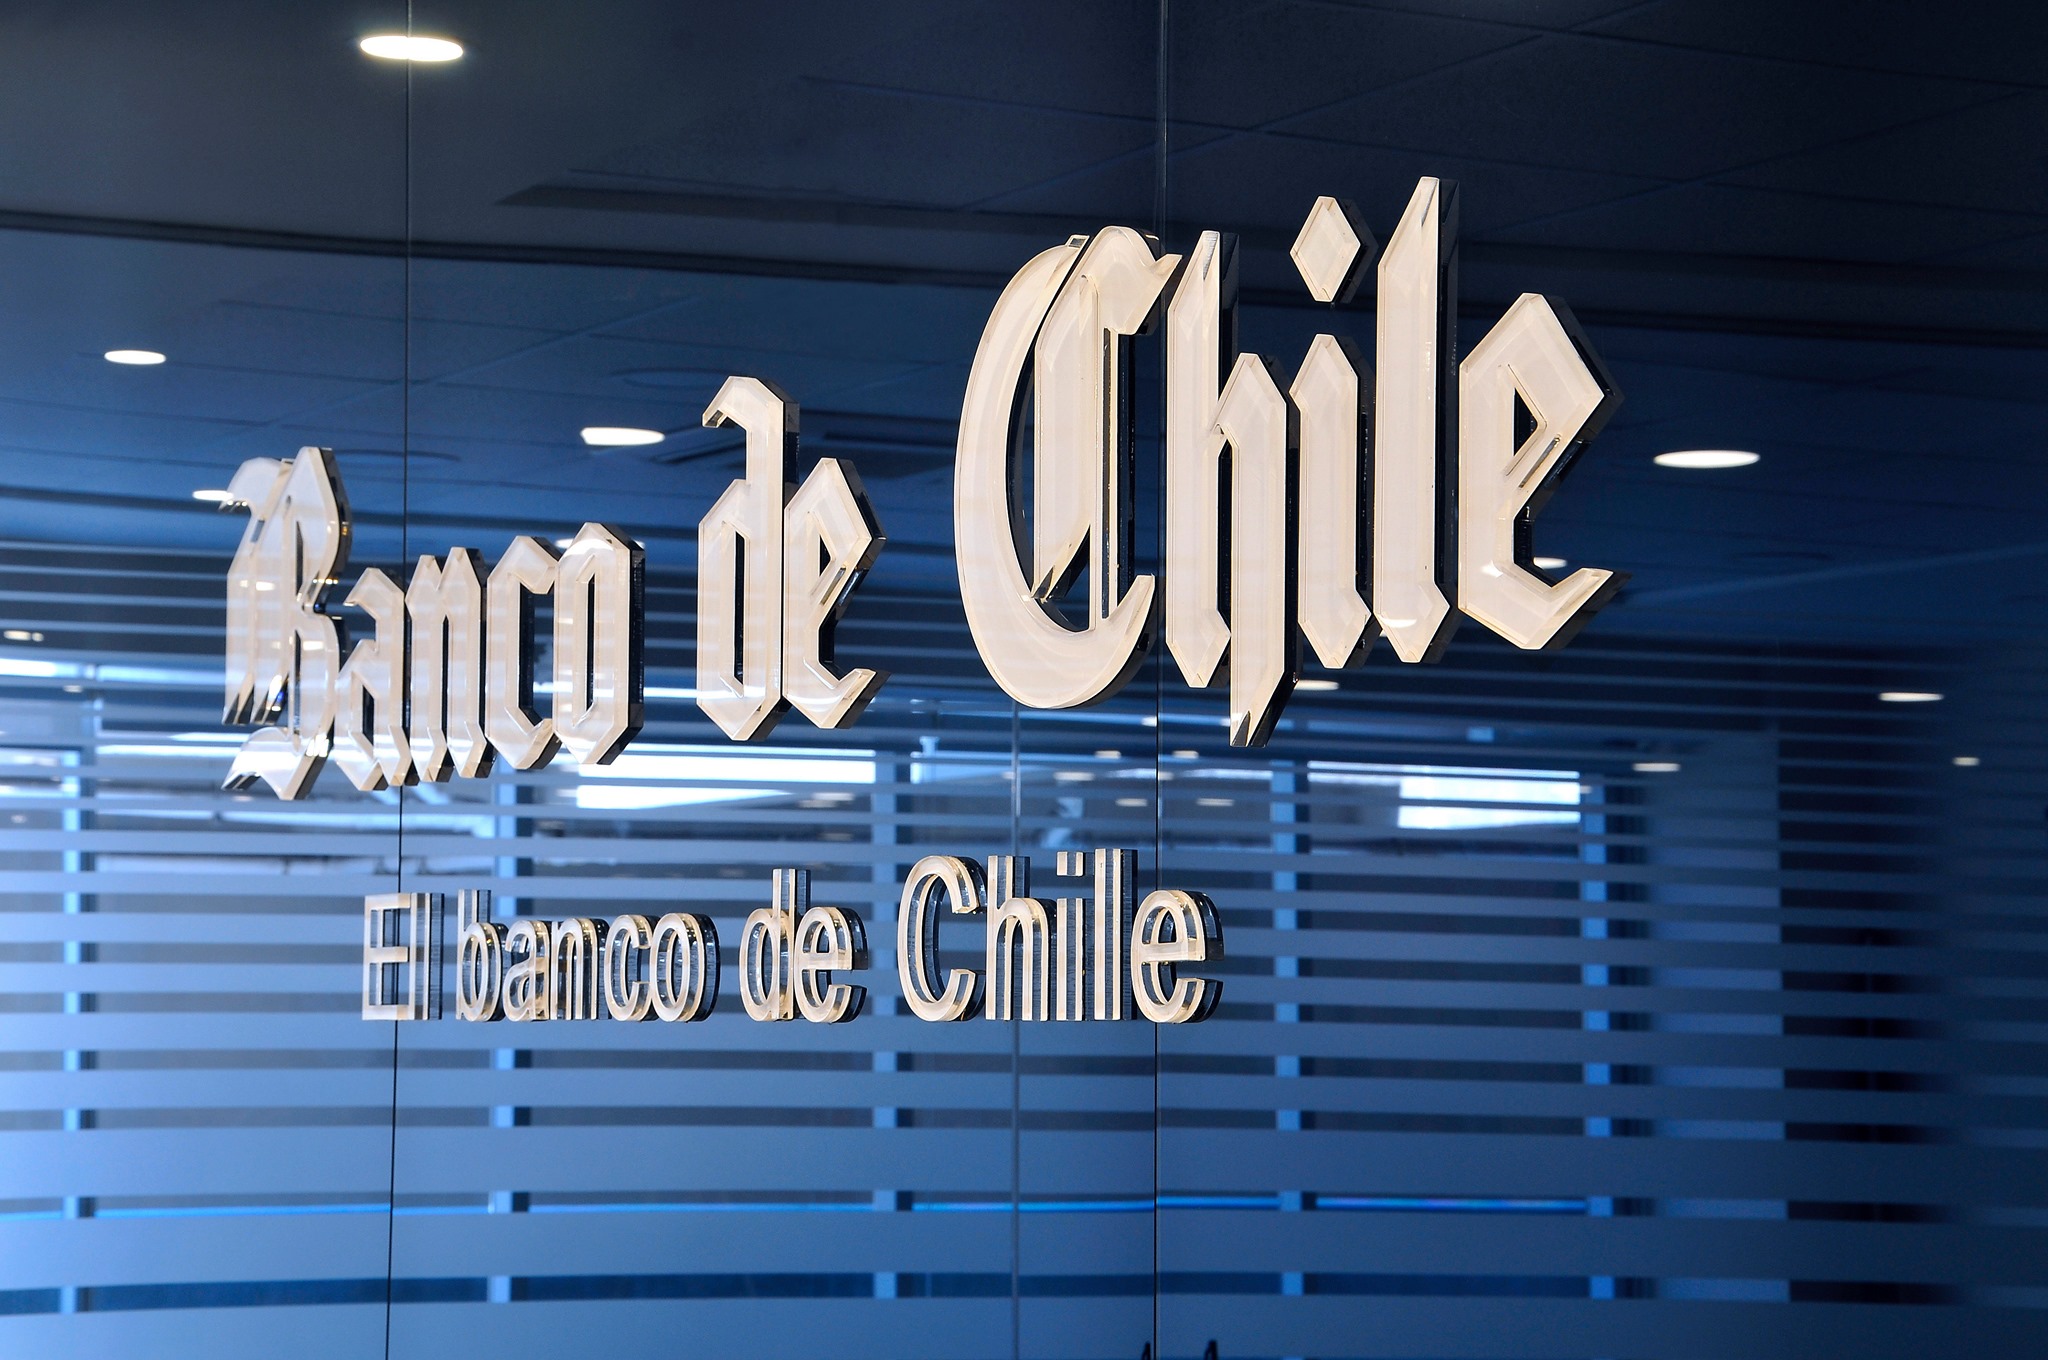 Maximice su patrimonio: ¡Invierta con confianza con Banco de Chile!